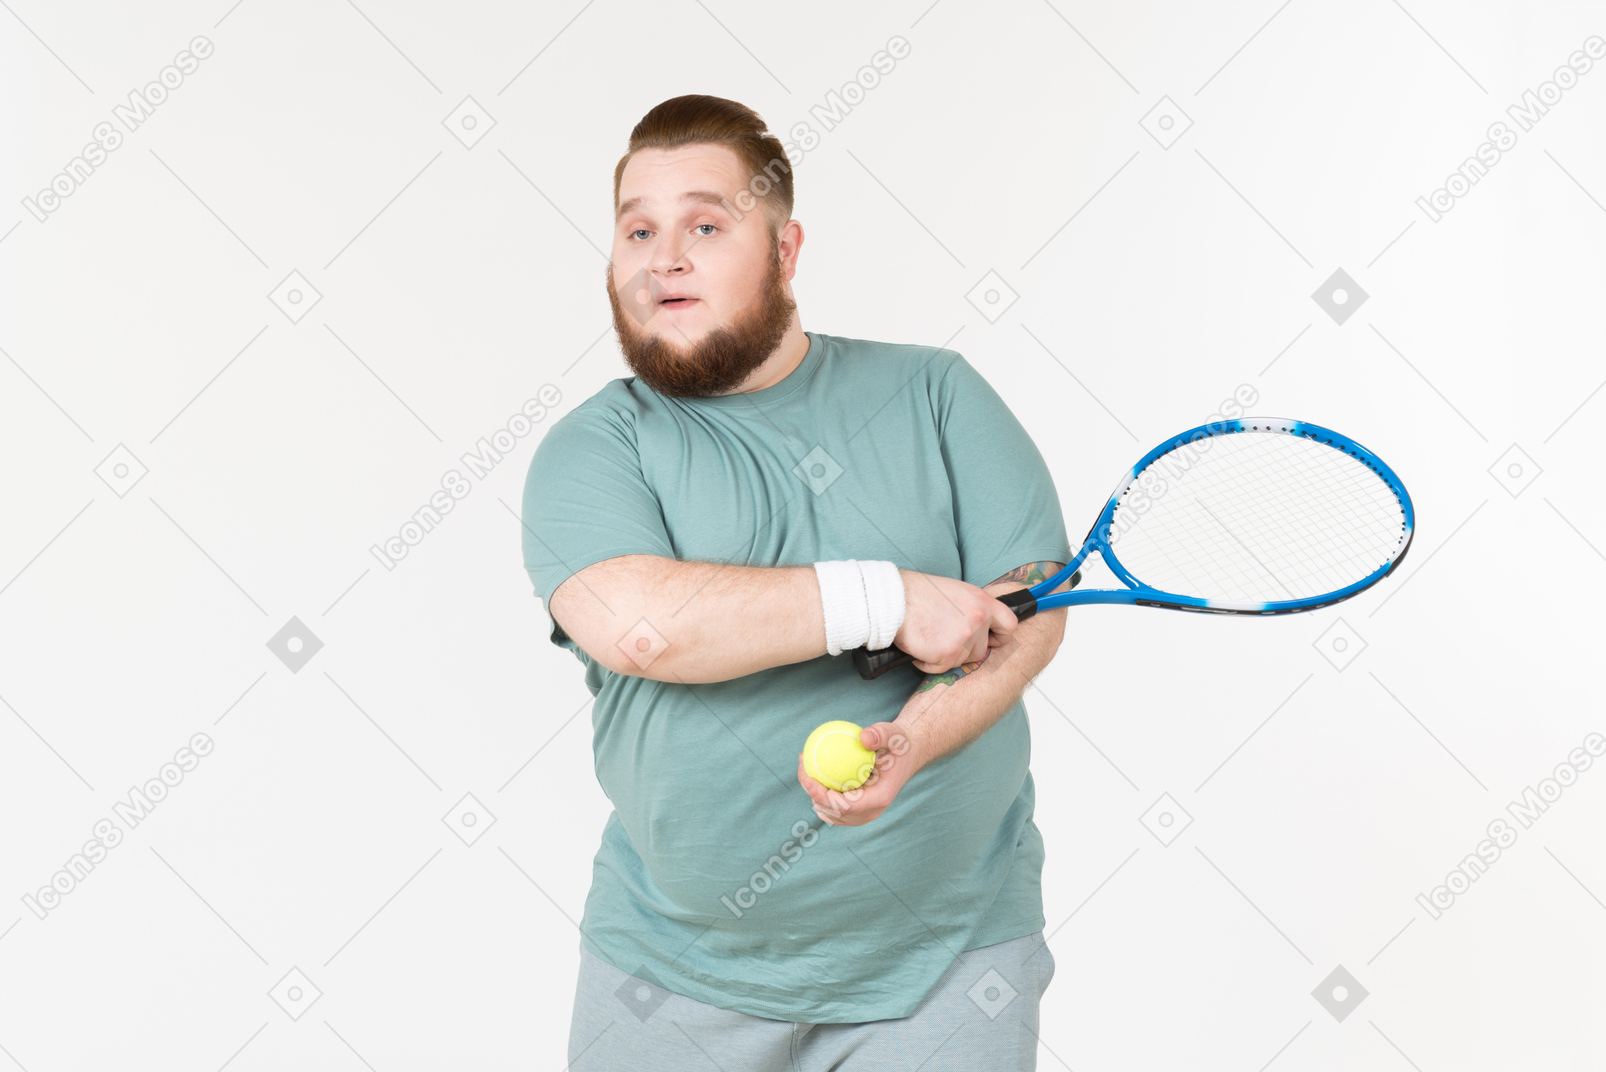 Cara grande no sportswear segurando raquete de tênis e bola de tênis